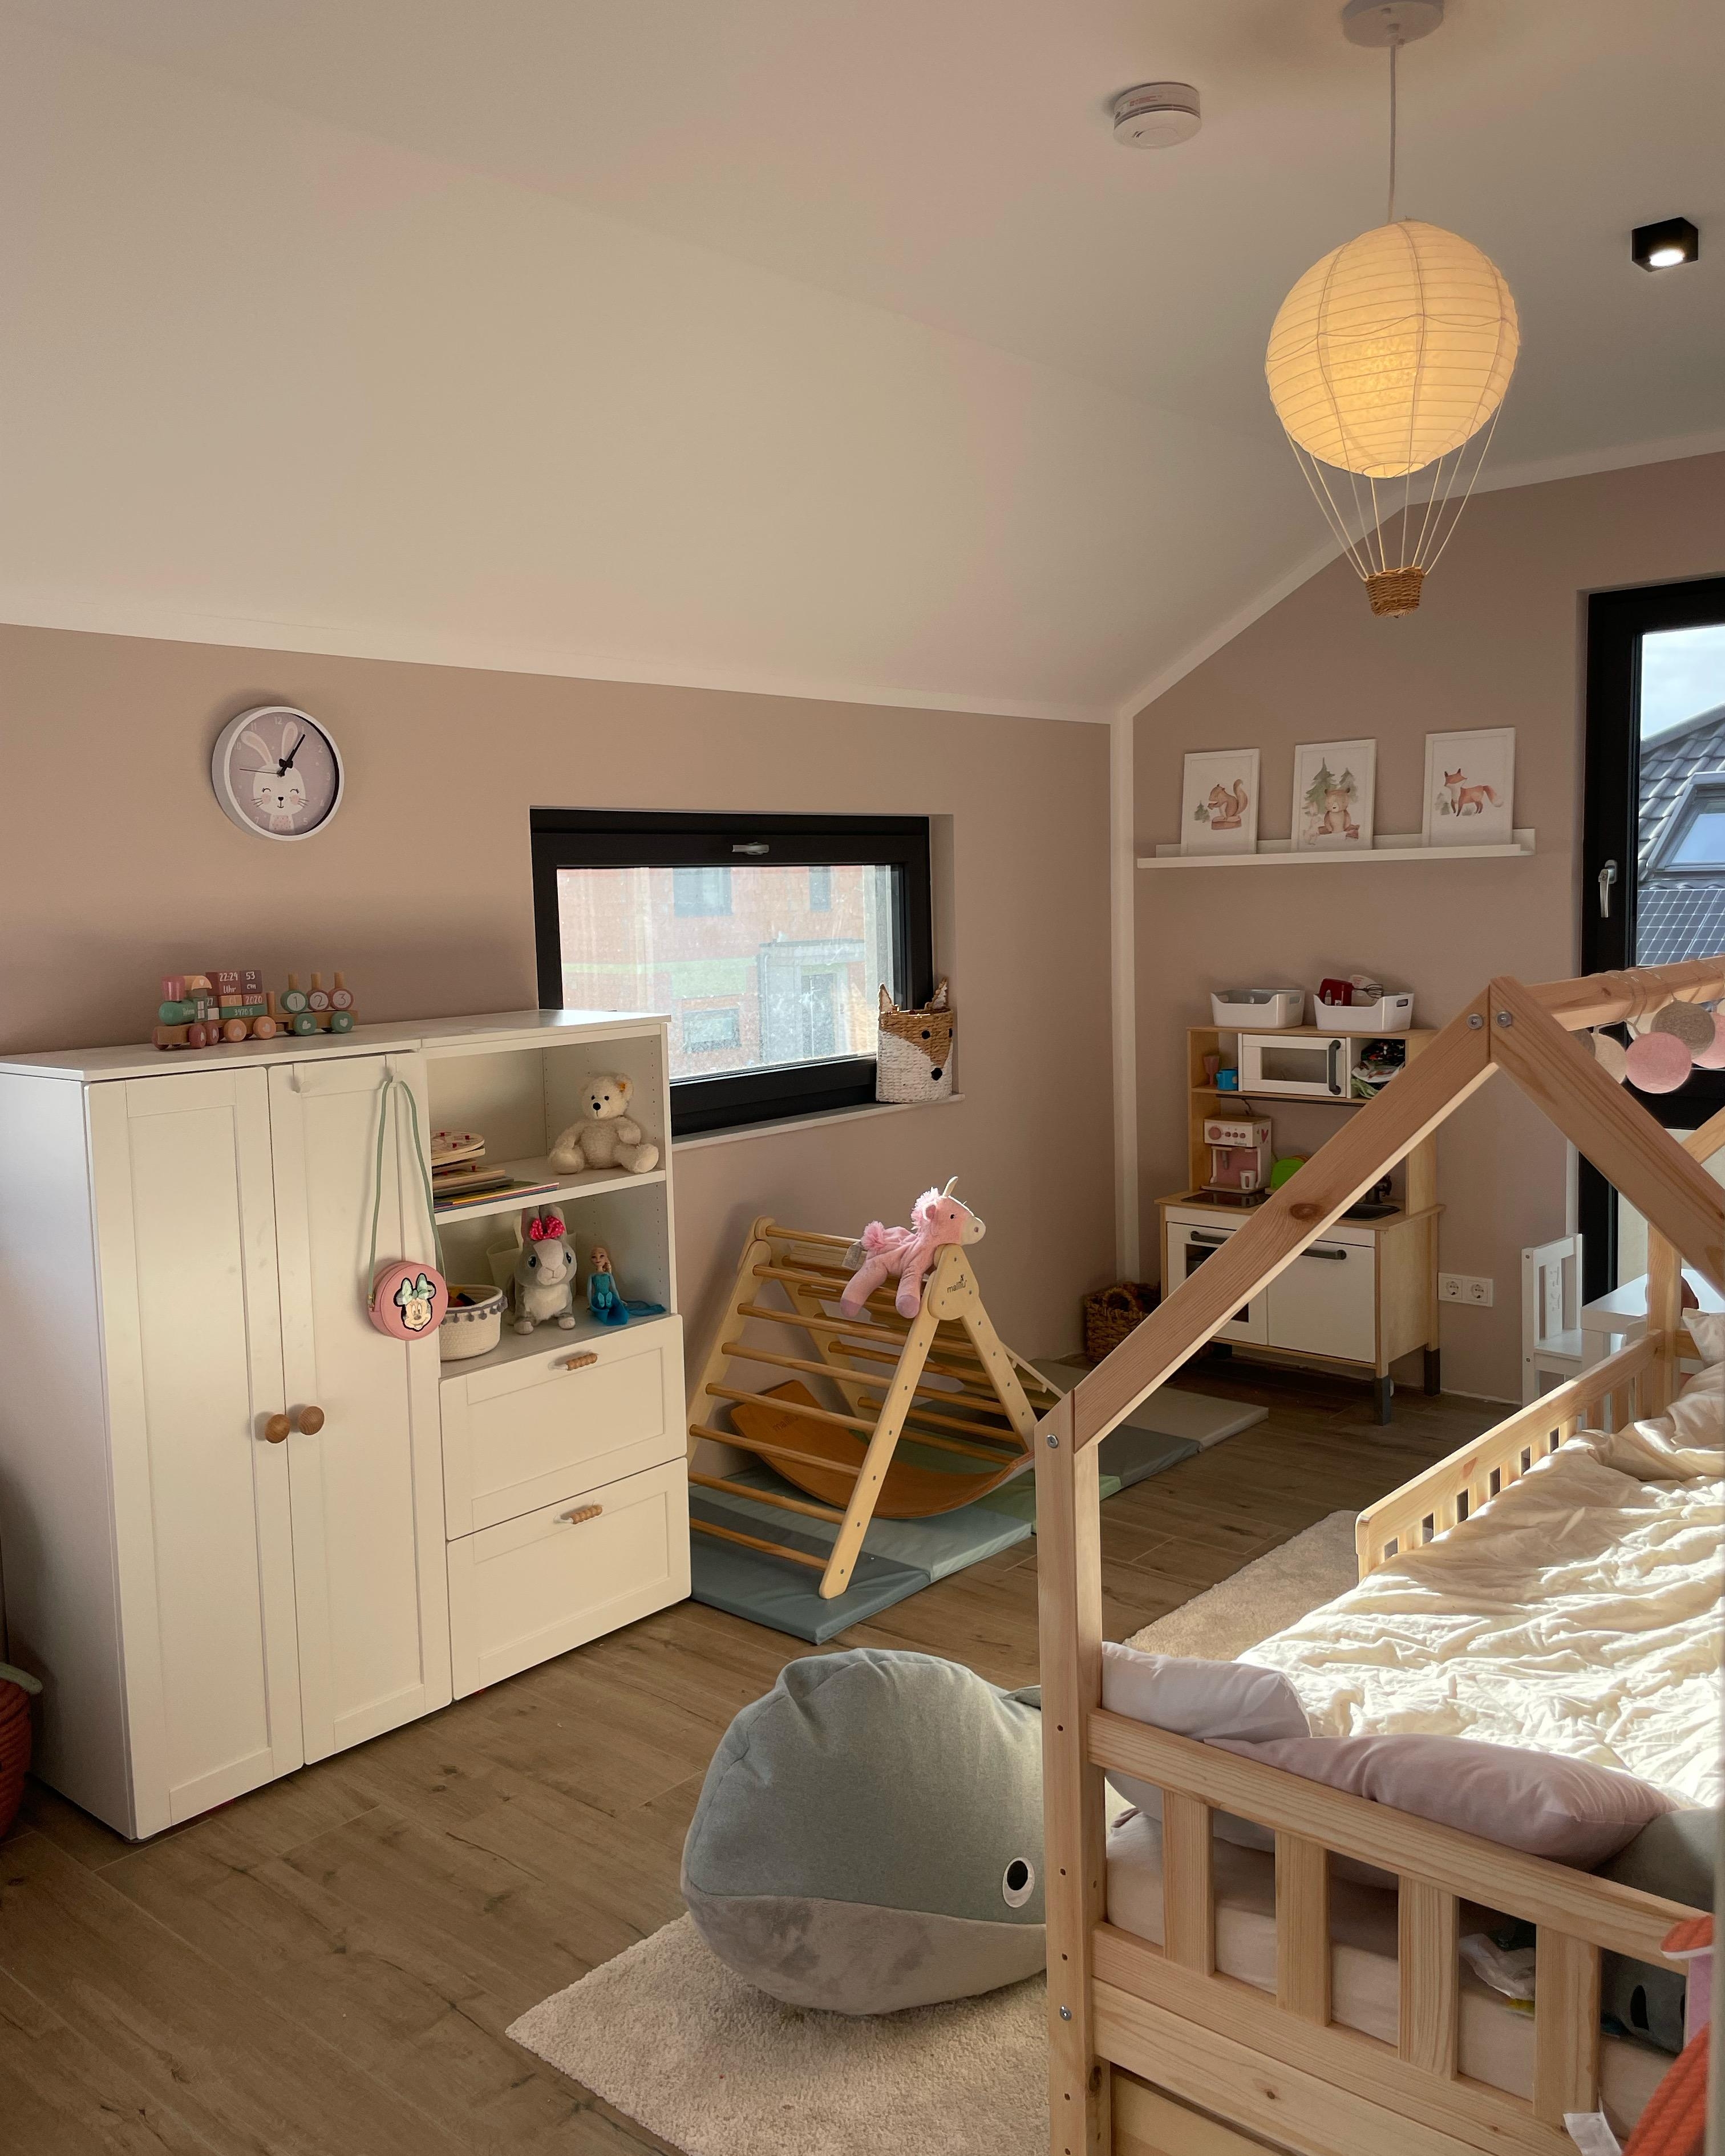 Das #Kinderzimmer wird immer wohnlicher 🥰 
#mädchenzimmer #interior #inneneinrichtung #mädchenmama #ikea #hausbett #diy